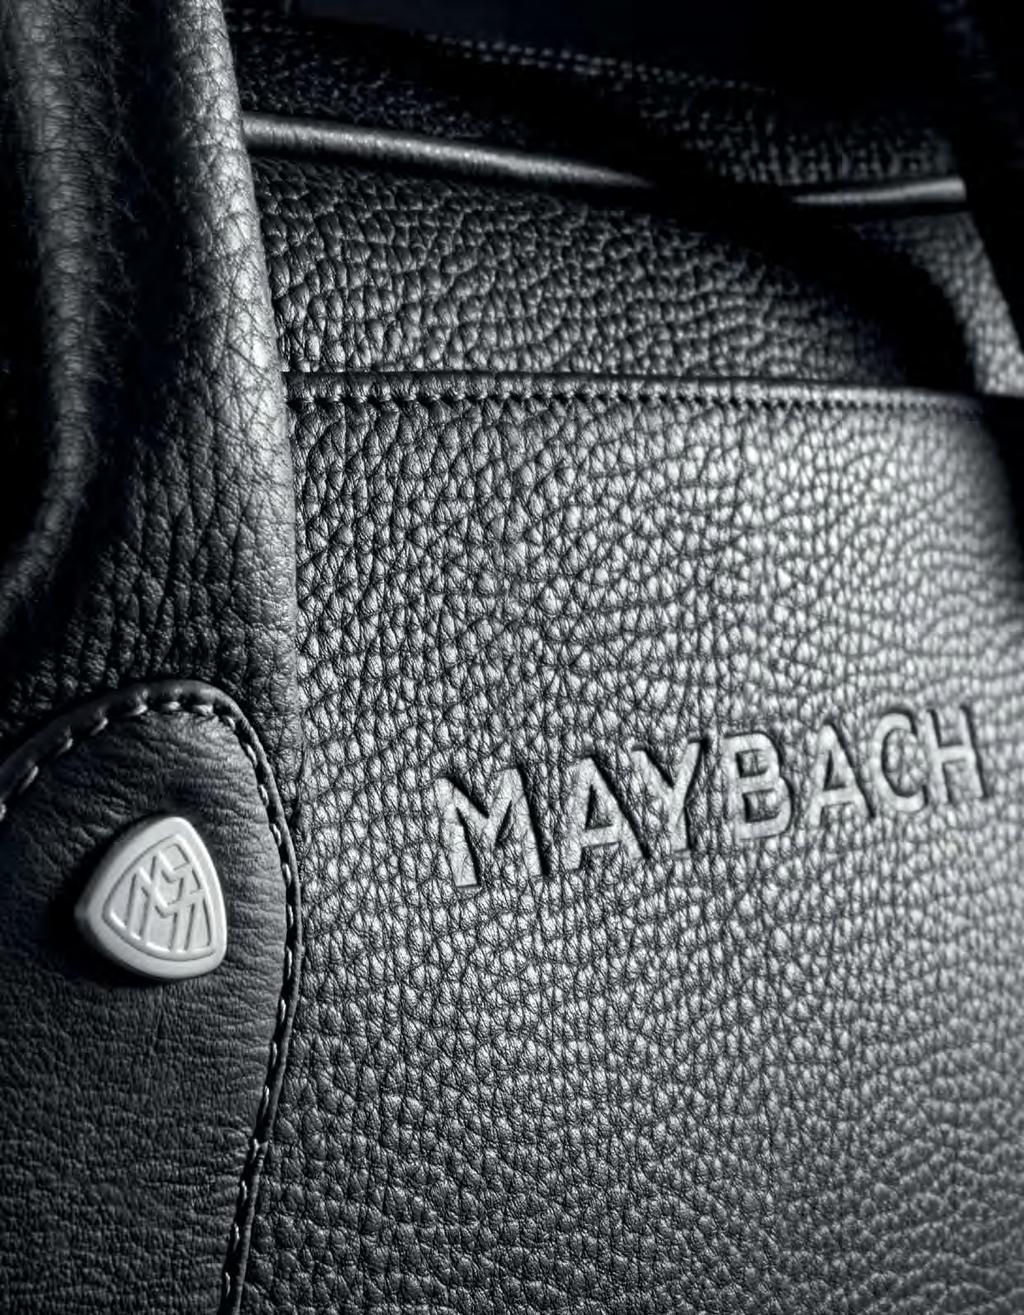 wilhelm MaYBacH und sein sohn karl MaYBacH setzten bereits vor über 00 Jahren den Grundstein einer Highend- Automobilmarke, die von Beginn an zur Legende wurde.